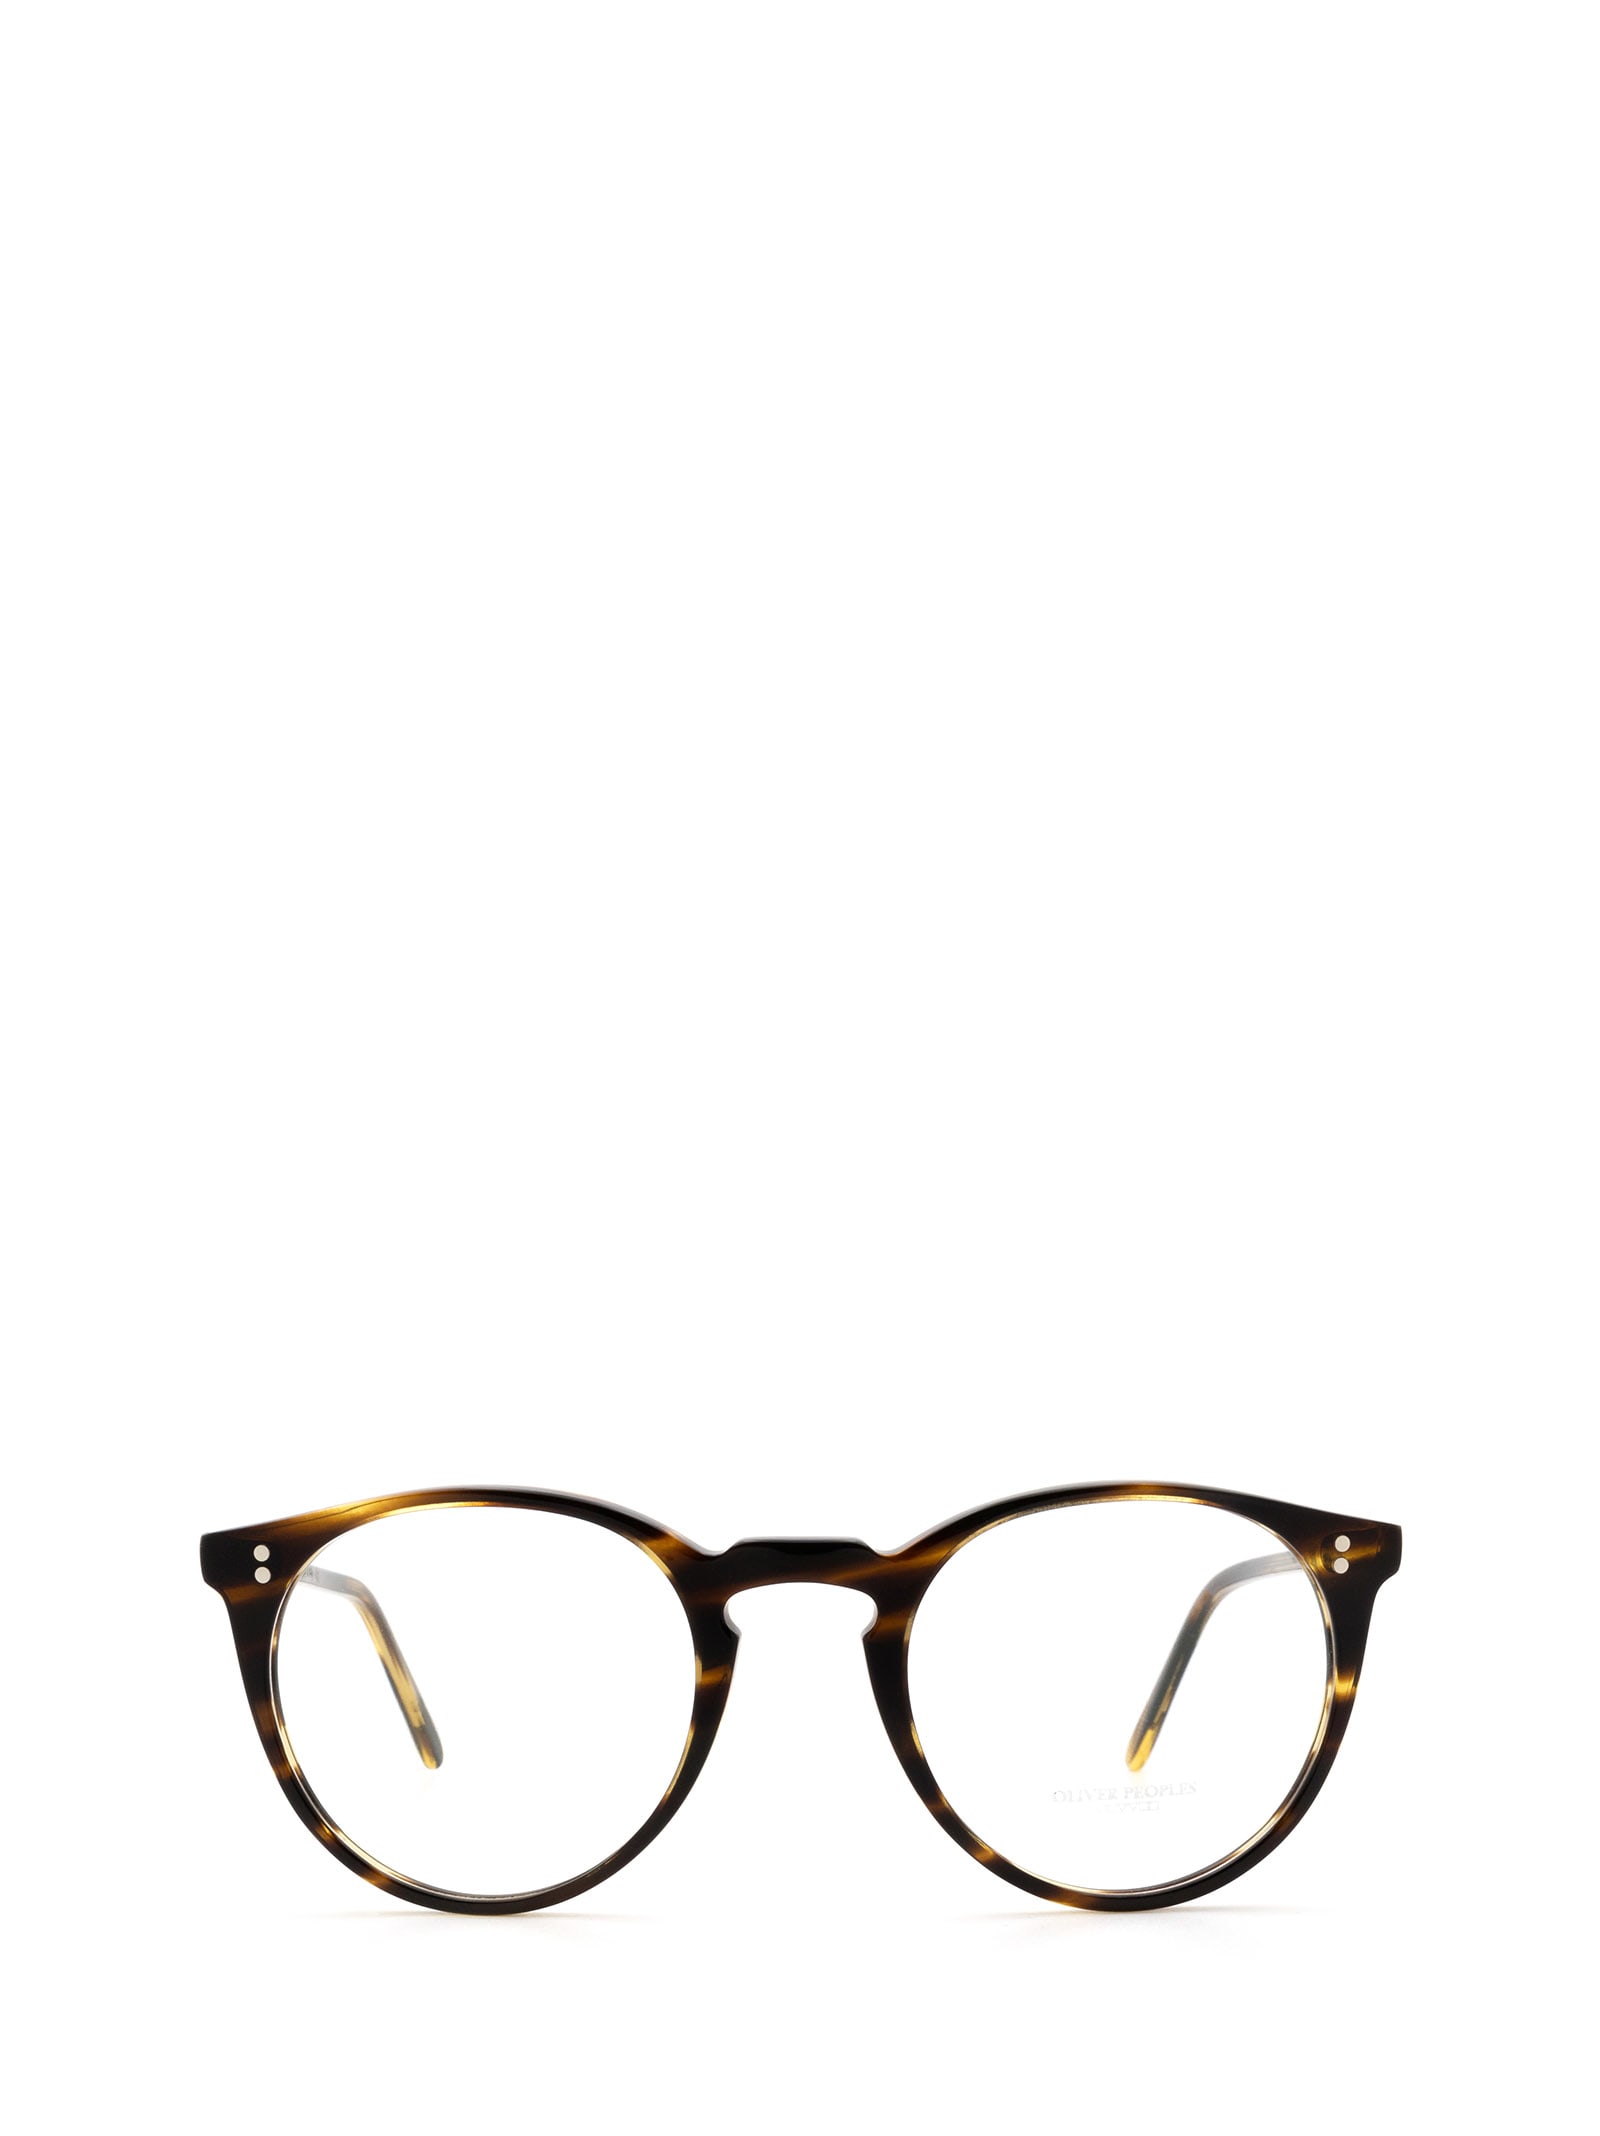 Ov5183 Cocobolo Glasses